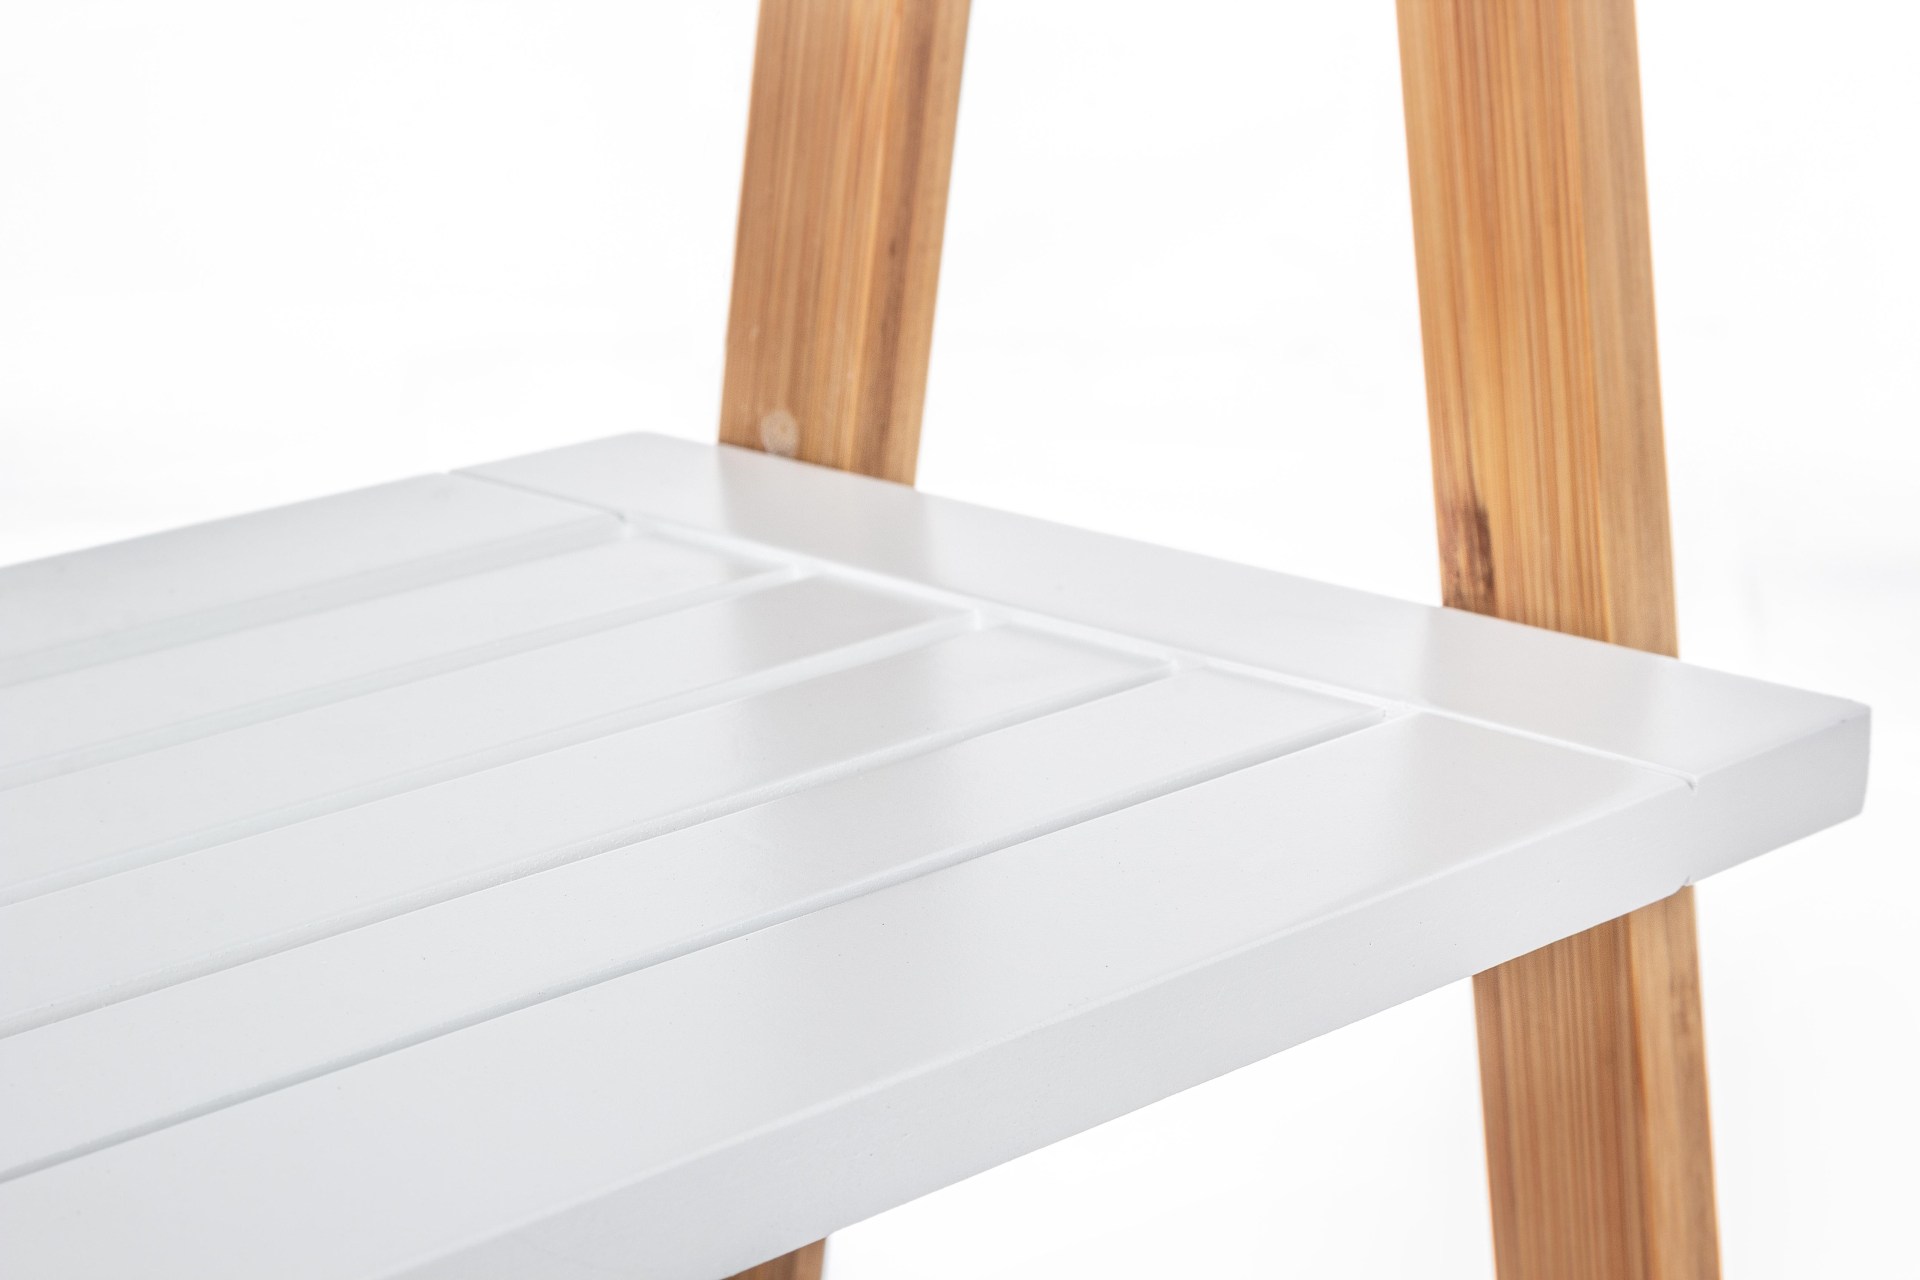 Das Leiterregal Audrey überzeugt mit seinem klassischen Design. Gefertigt wurde es aus Bambusholz, welches einen weißen Farbton besitzt. Das Gestell ist auch aus Bambus und hat eine natürliche Farbe. Das Bücherregal verfügt über drei Böden. Die Breite bet